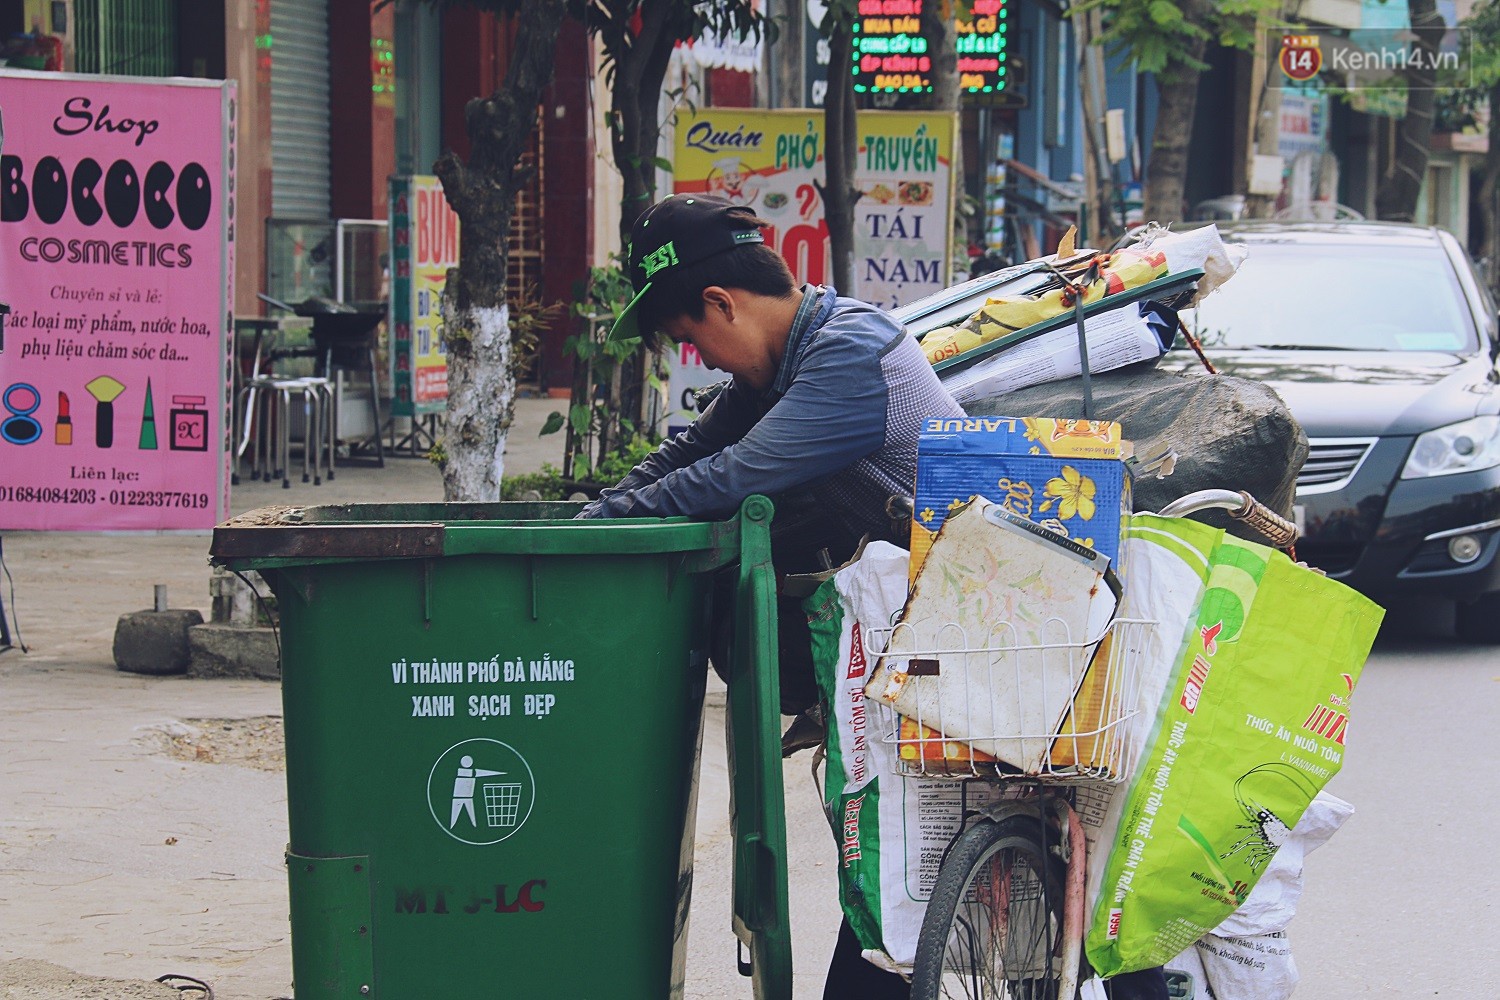 Chính sách xử lý rác thải cần bao trùm cả những người ở khu vực không chính thức | Ảnh: CFB